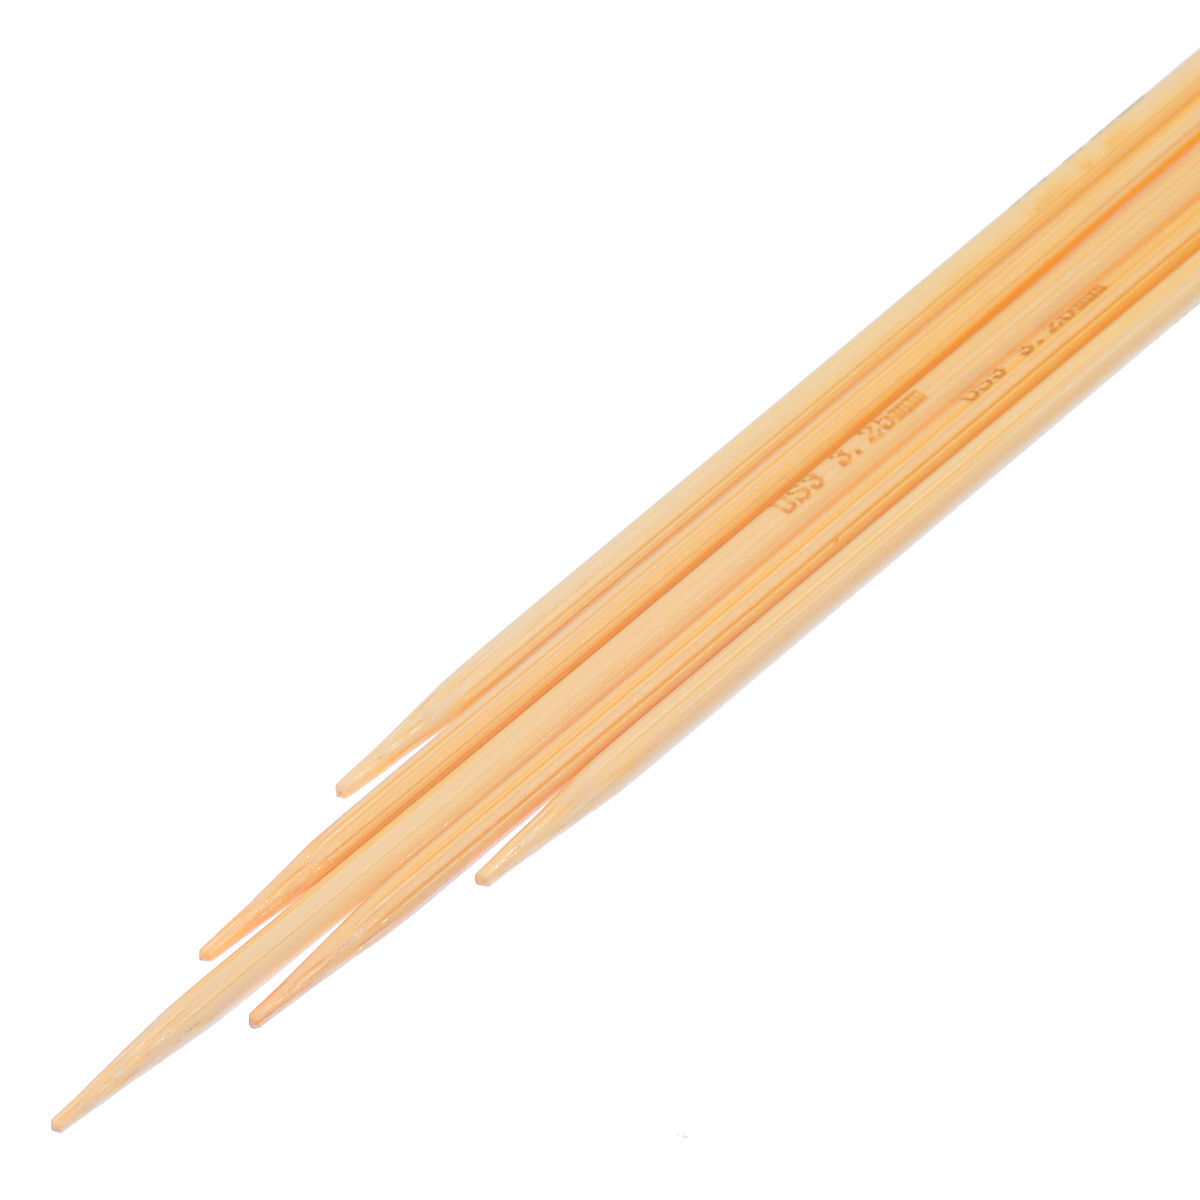 (US3 3.25mm) 竹 ダブルポイント 編み針 ナチュラル 16.5cm 長さ、 1 セット ( 5 個/セット) の画像